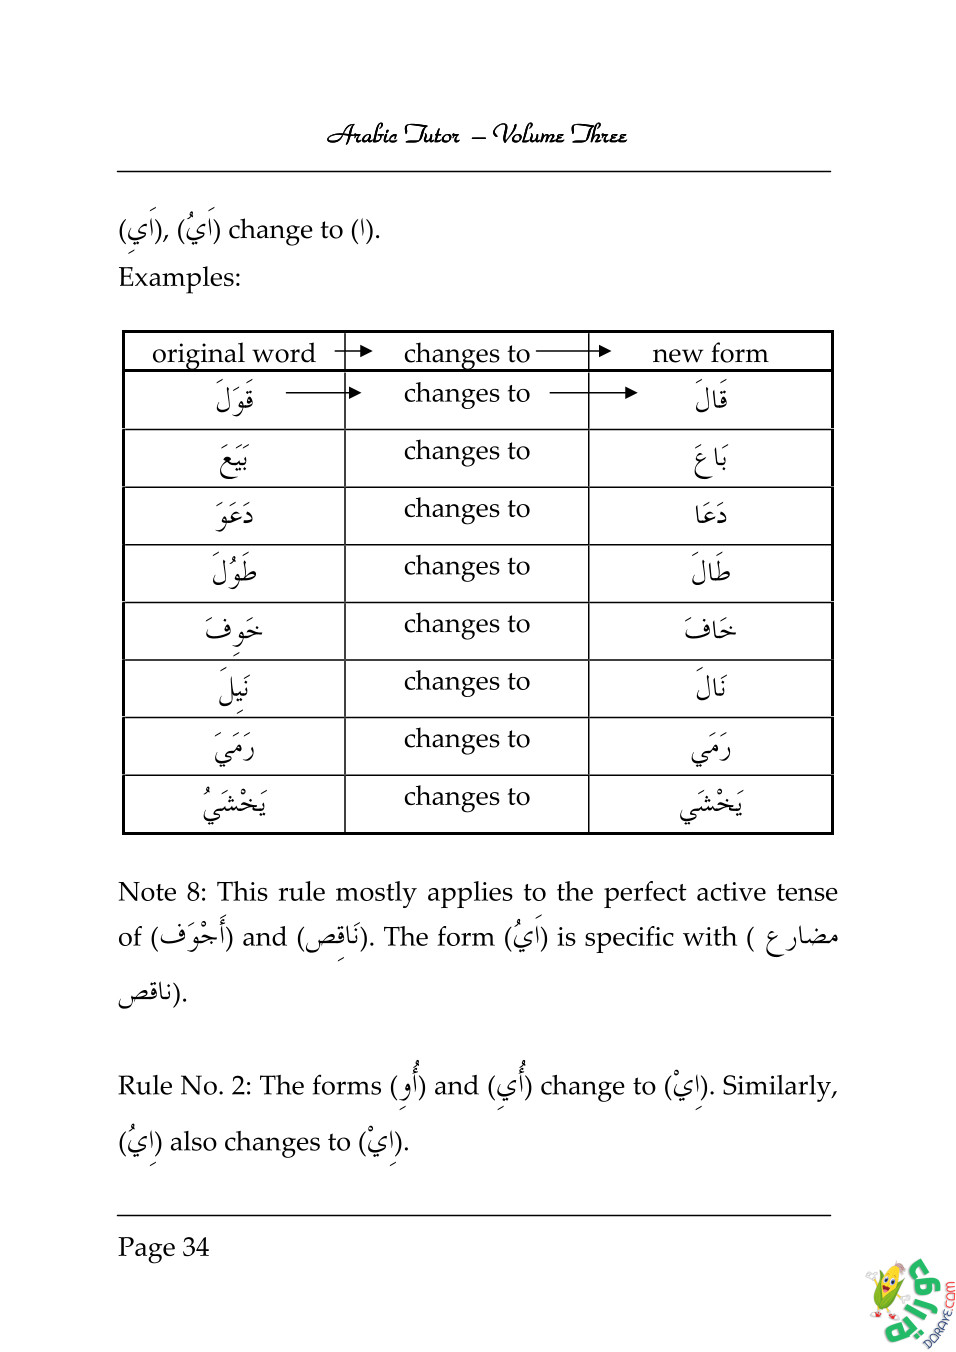 Arabic Tutor Volume Three 034 - Arabic Tutor Volume-Three 3